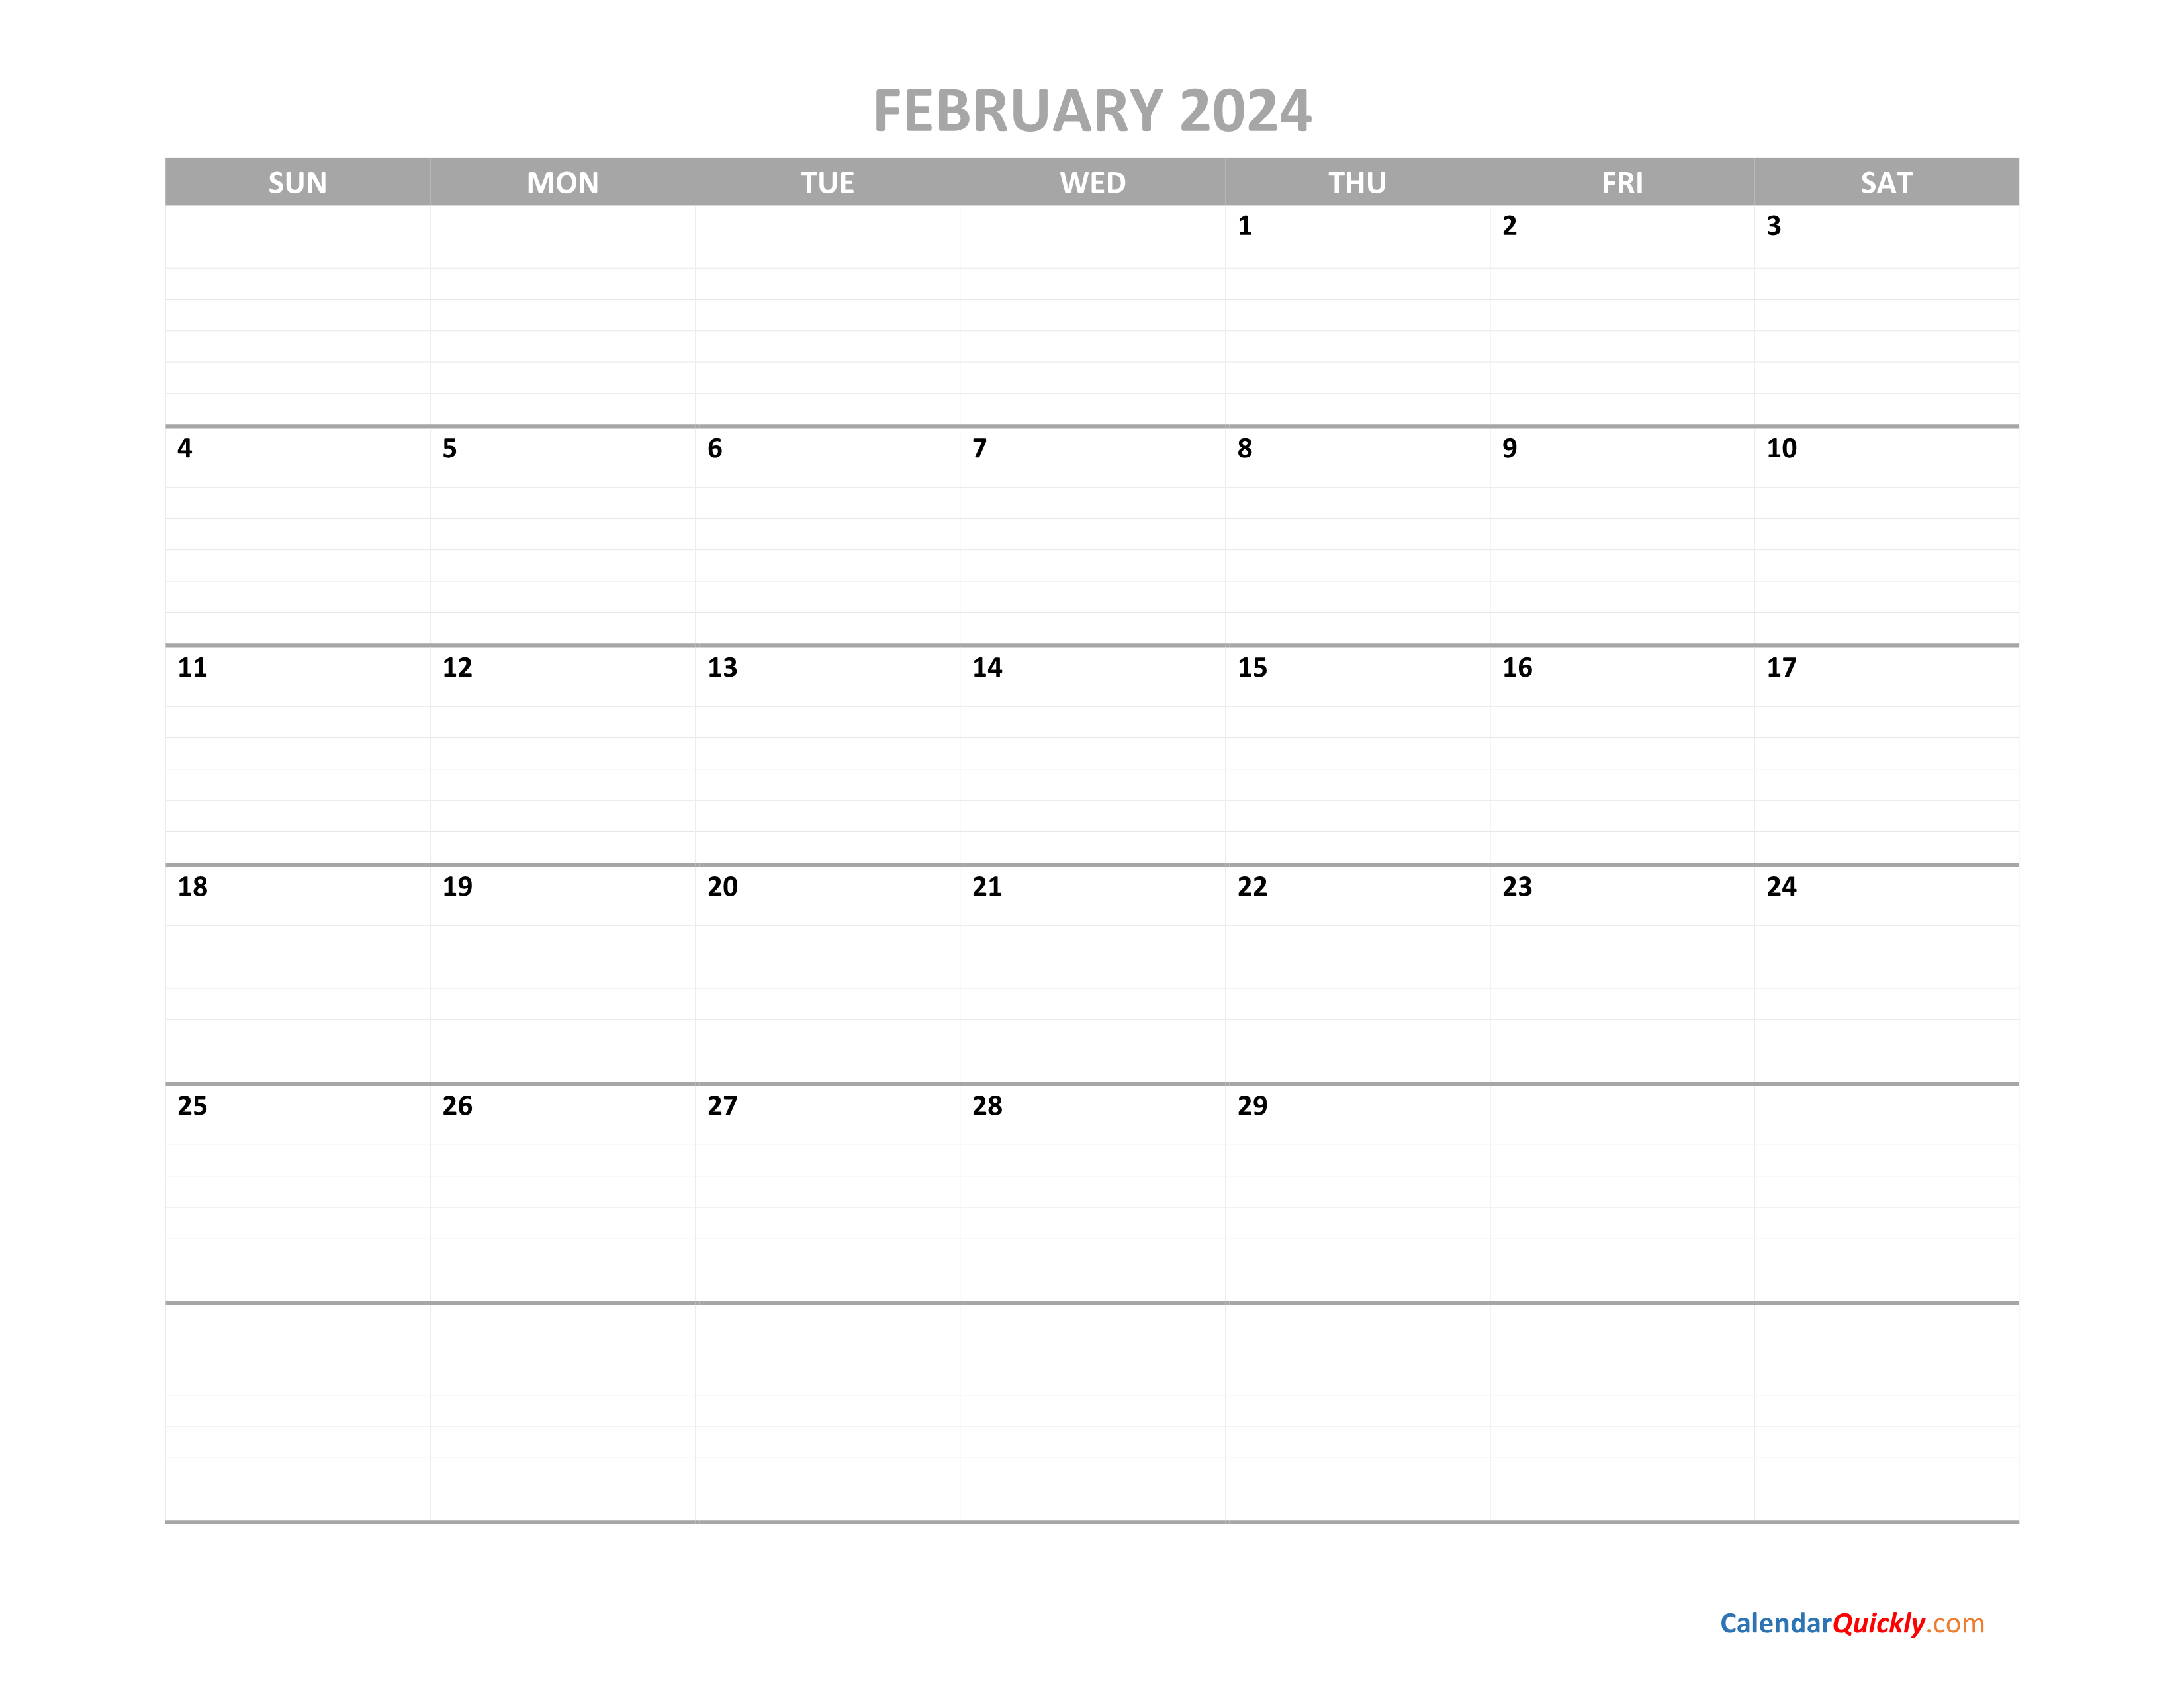 february-calendar-2024-printable-calendar-quickly